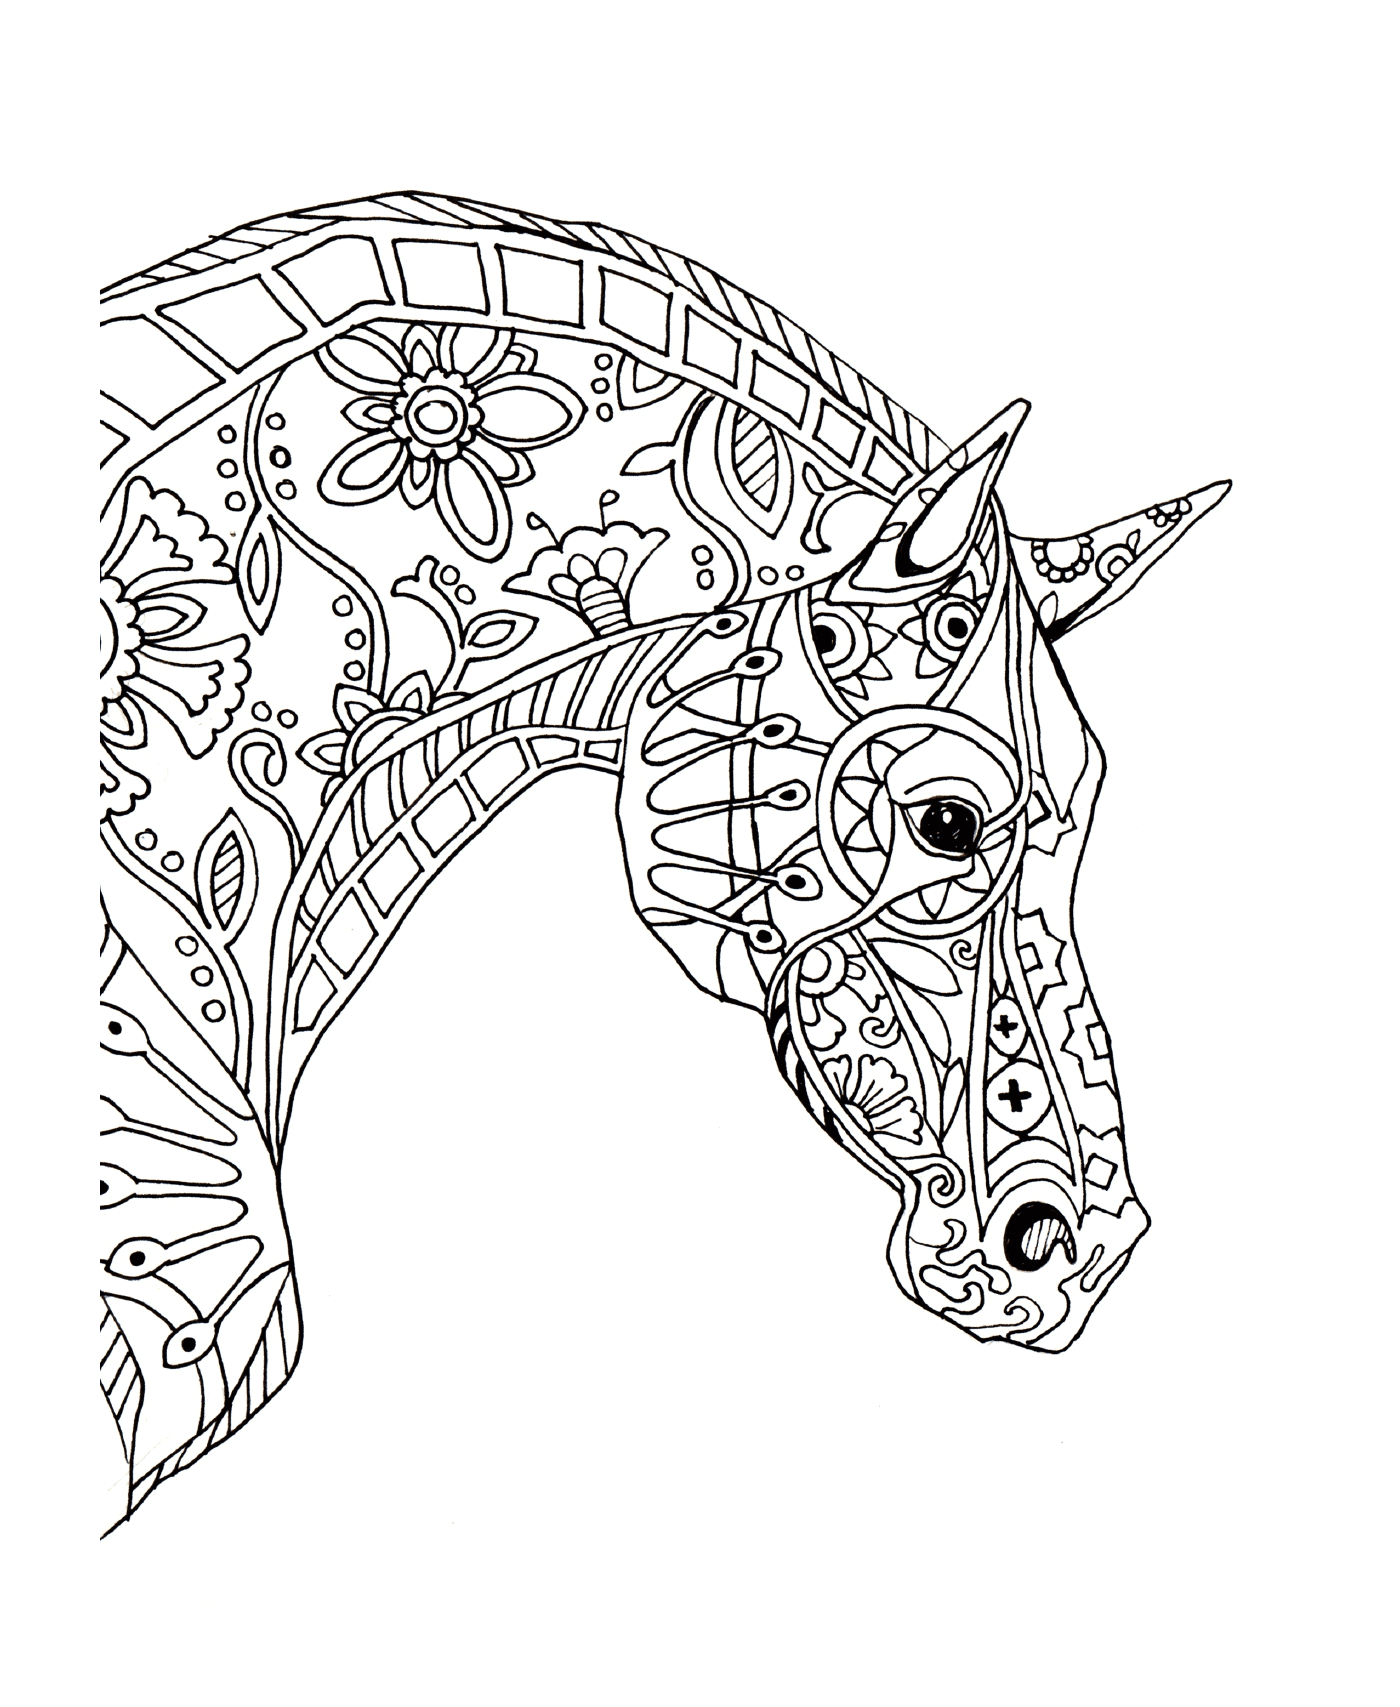  Der Kopf eines dekorativen Pferdes 